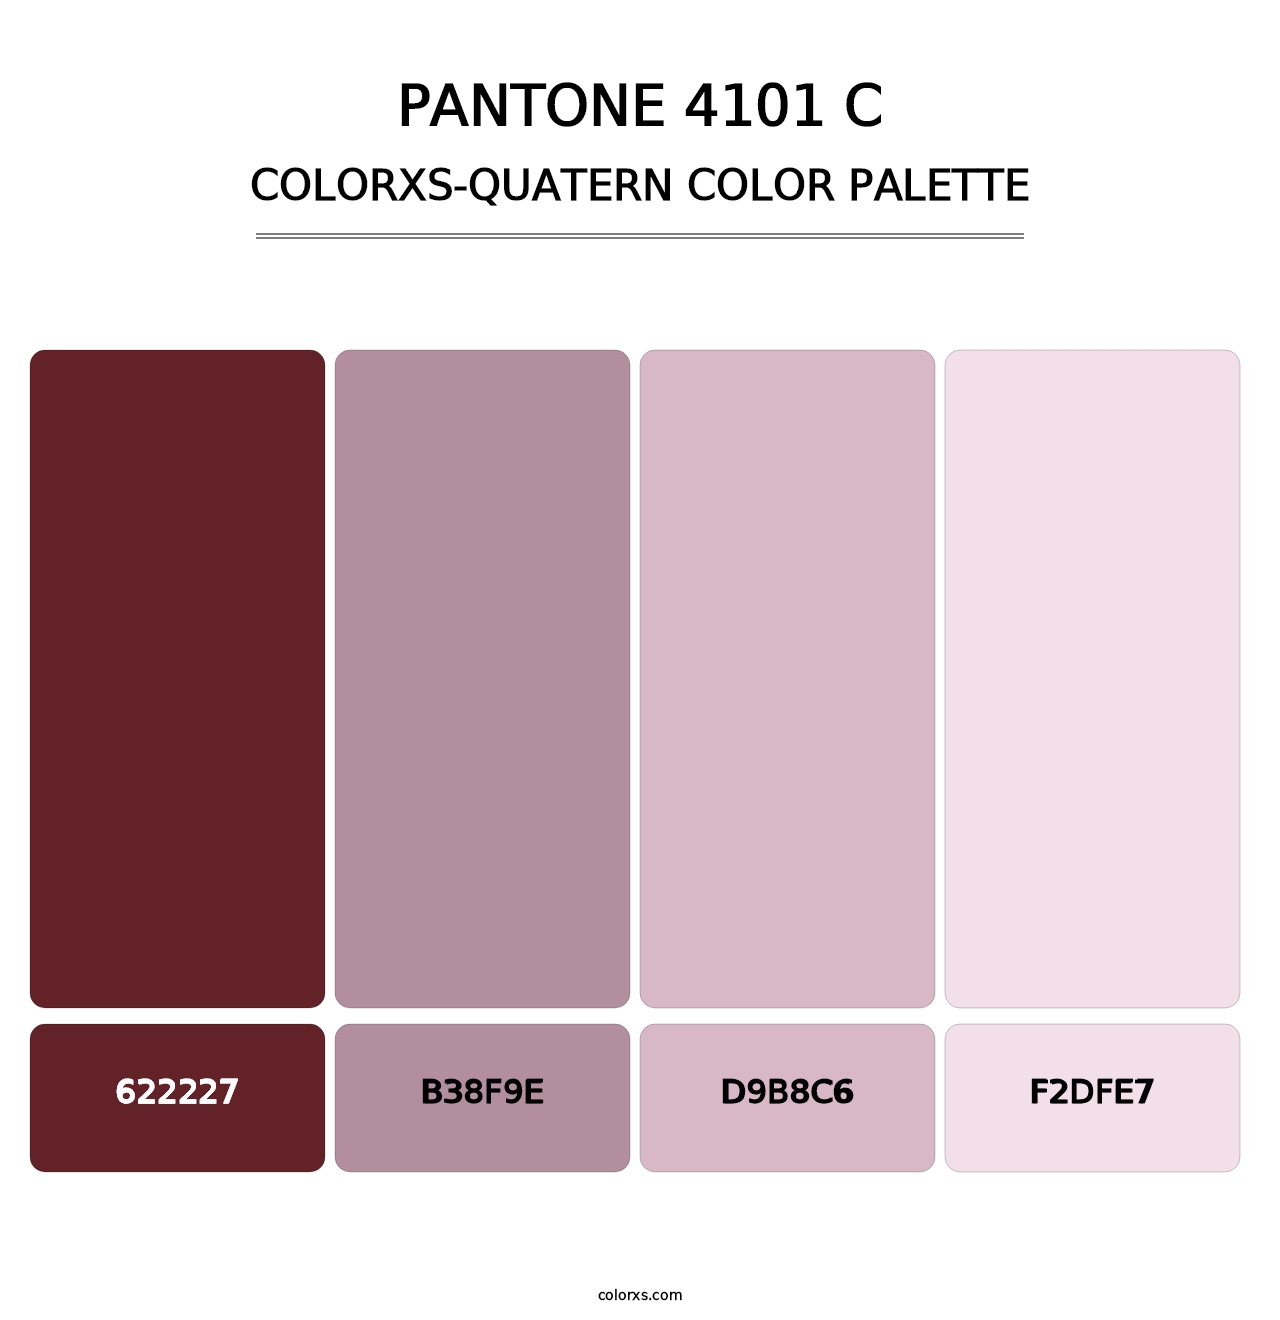 PANTONE 4101 C - Colorxs Quatern Palette